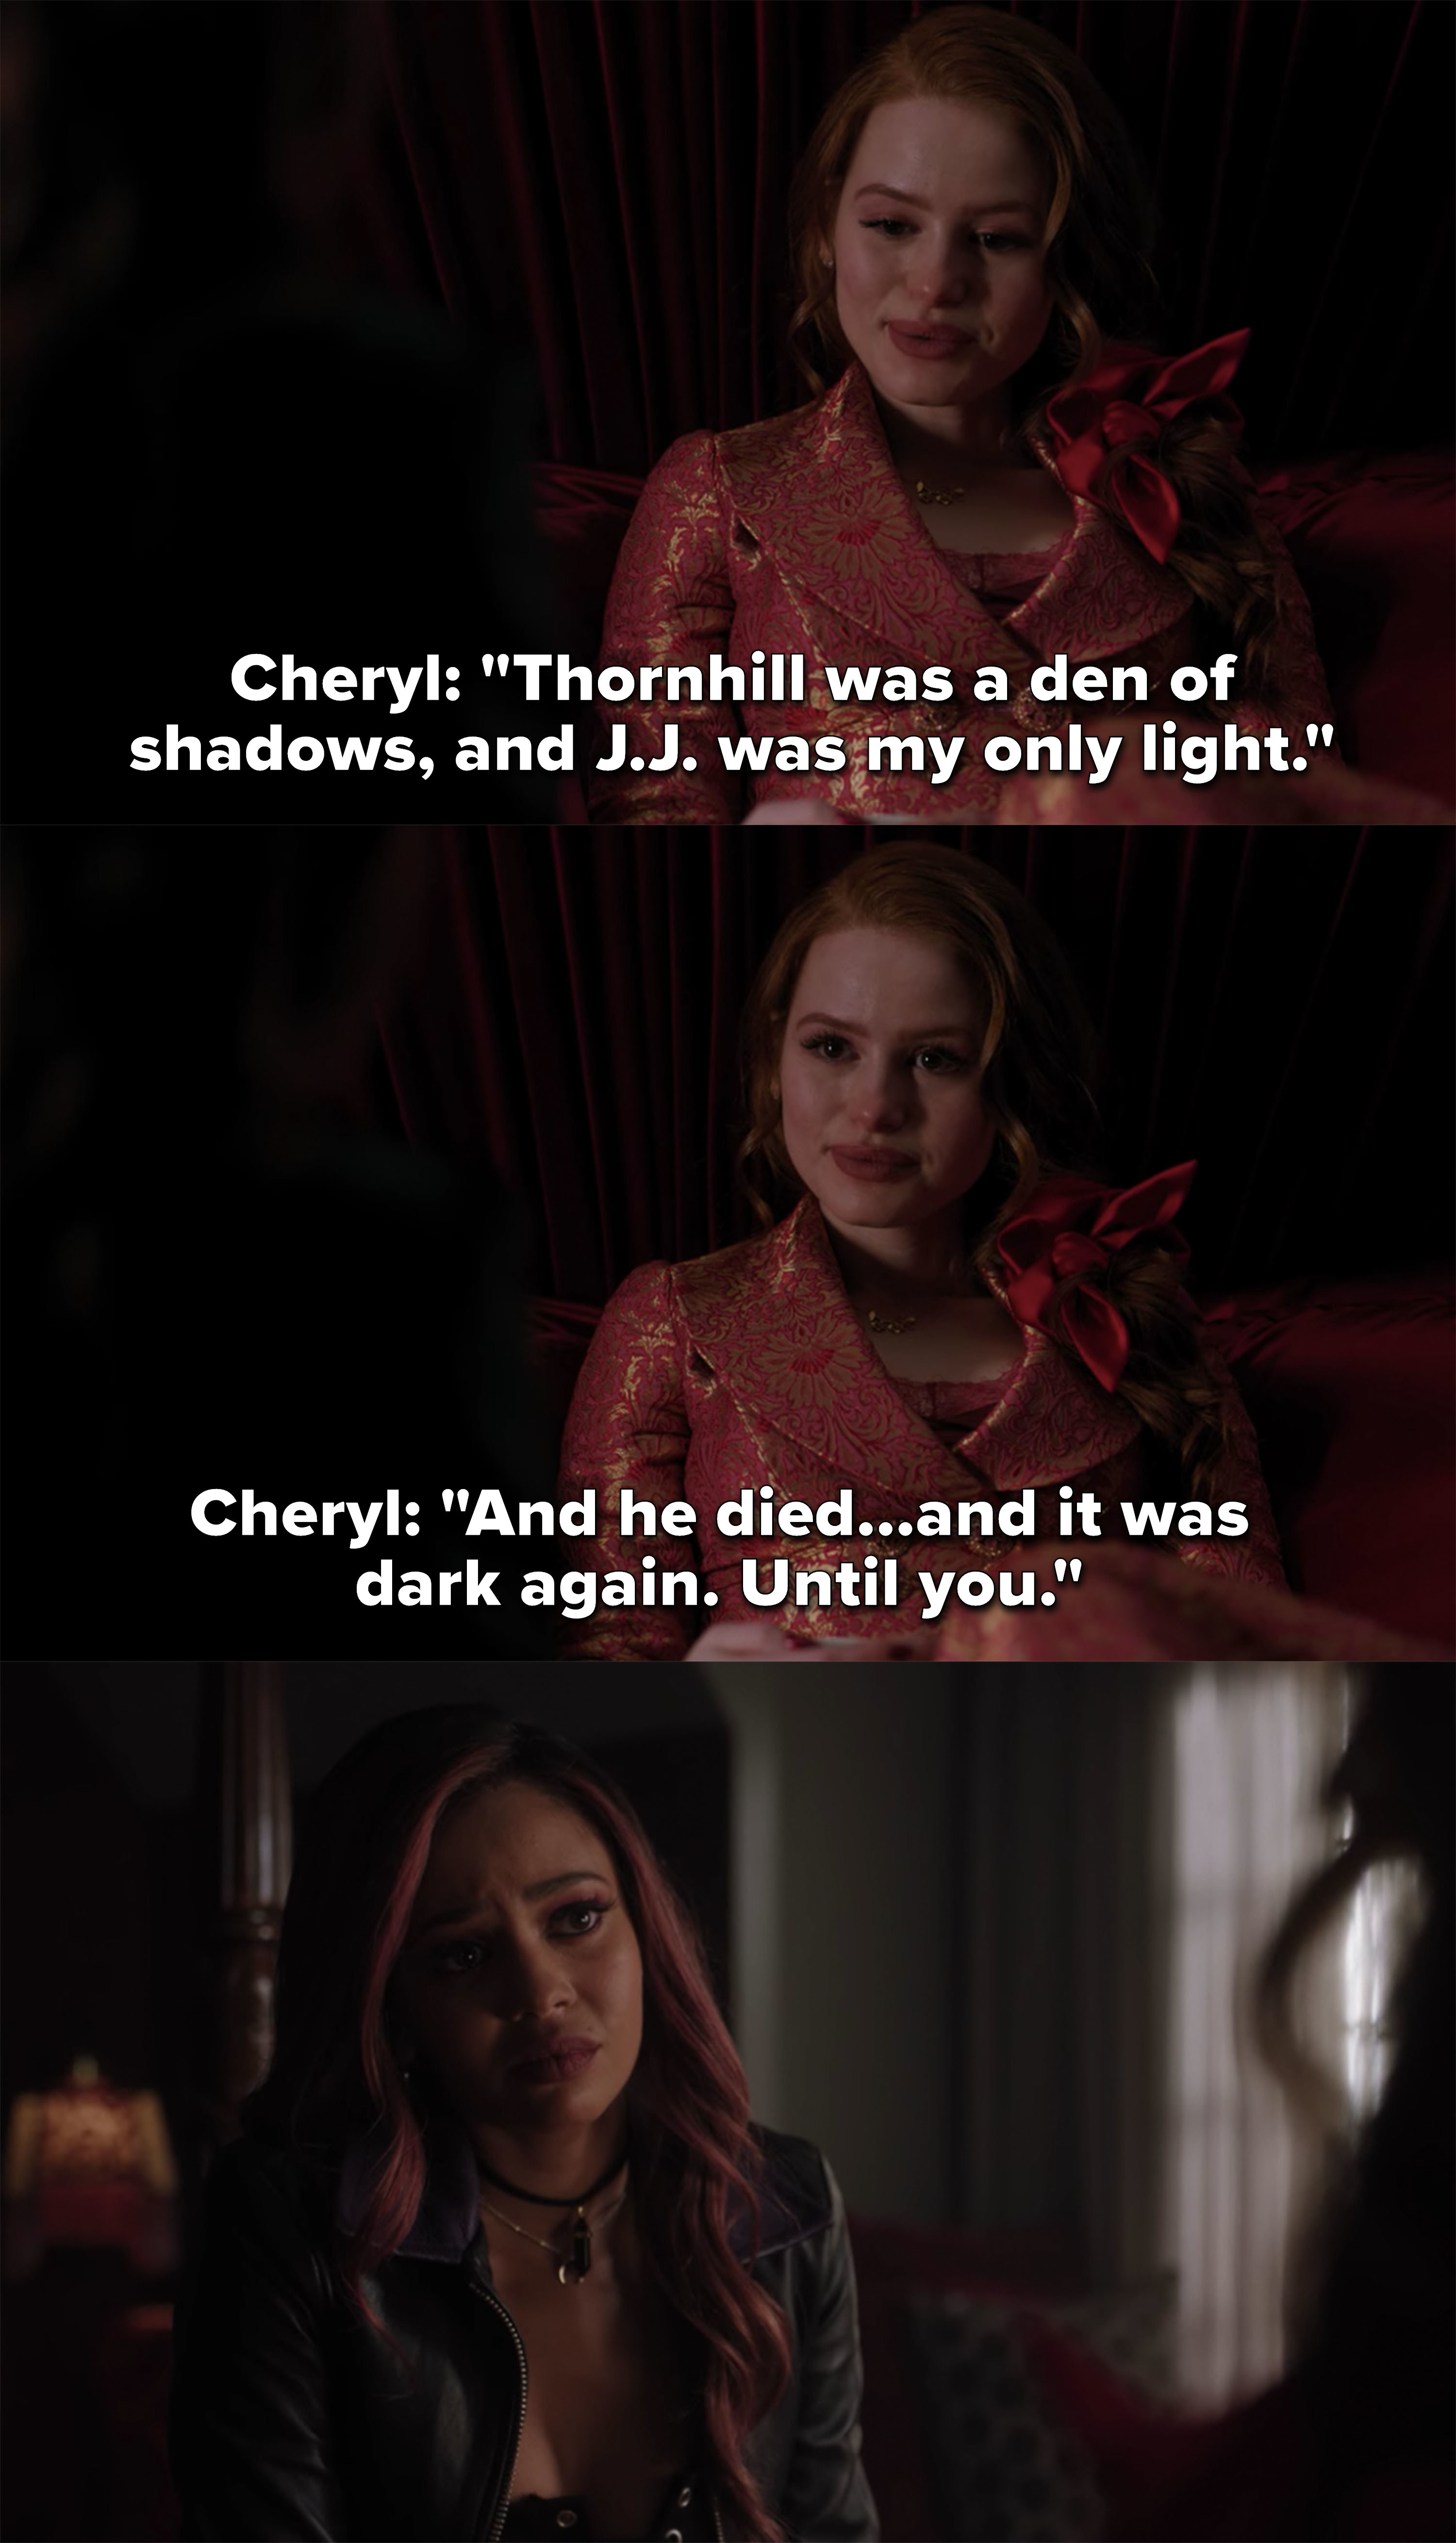 Cheryl说杰森是她唯一的光,在他死后又天黑,直到托尼走了过来